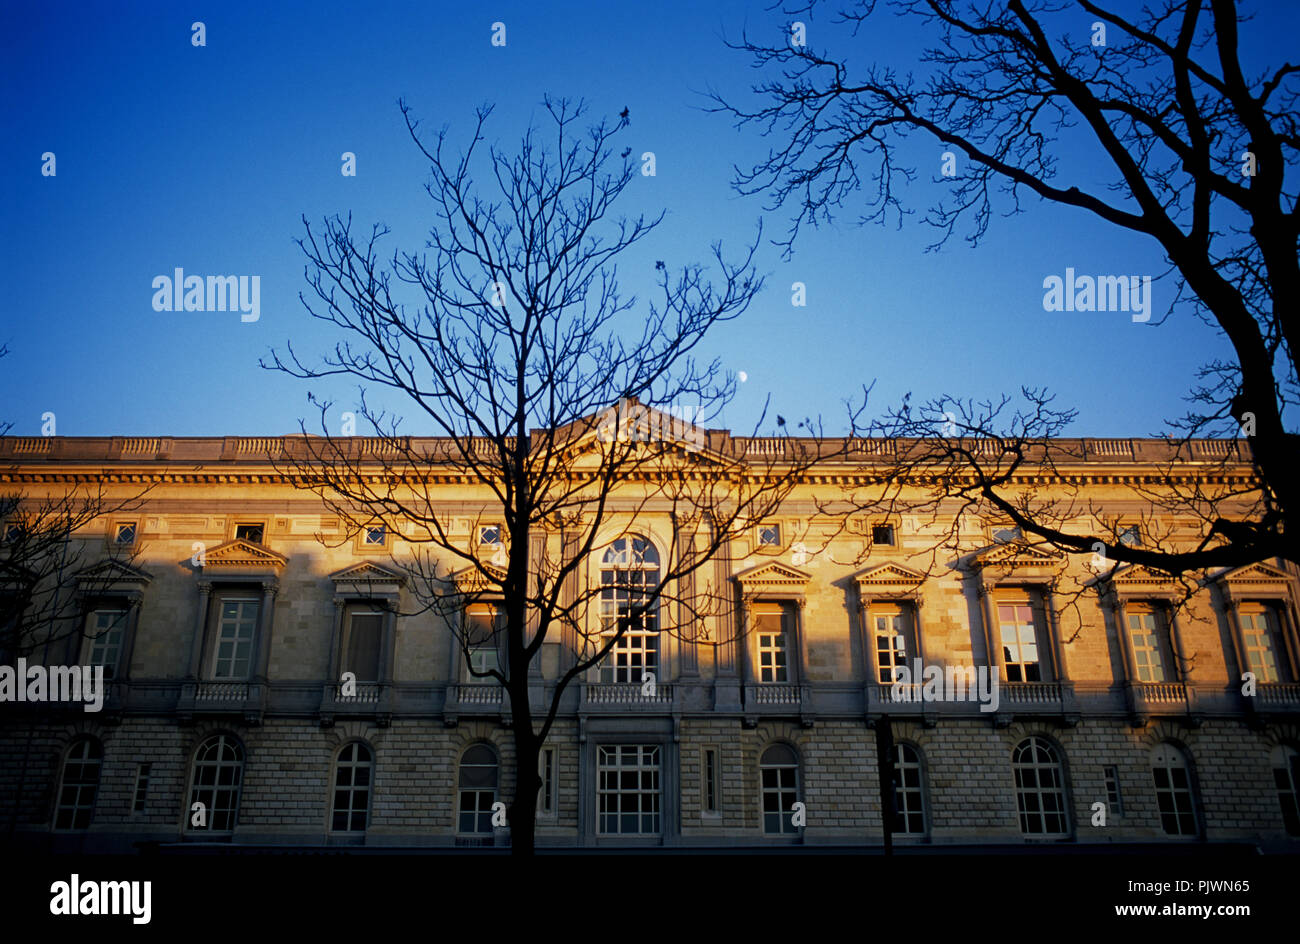 La Cour de Justice à Gand, conçu par Louis Roelandt (Belgique, 18/12/2007) Banque D'Images